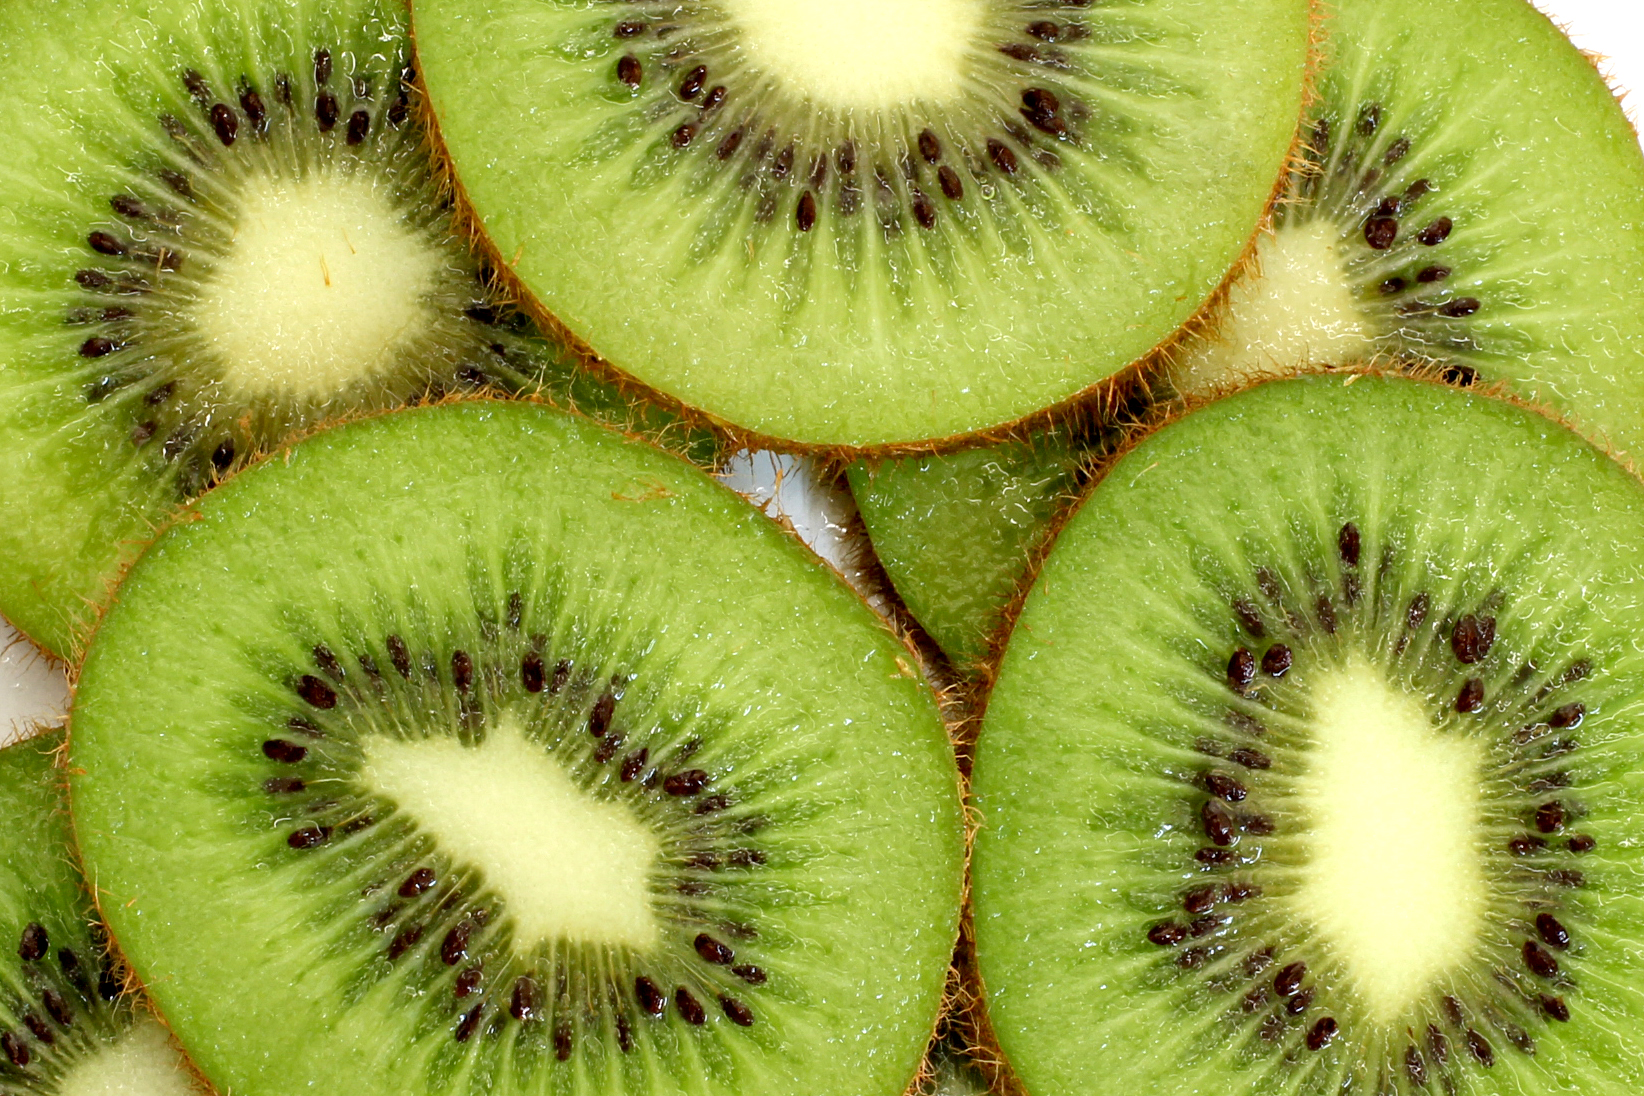 Sliced Kiwi Fruit Previous Photo Next